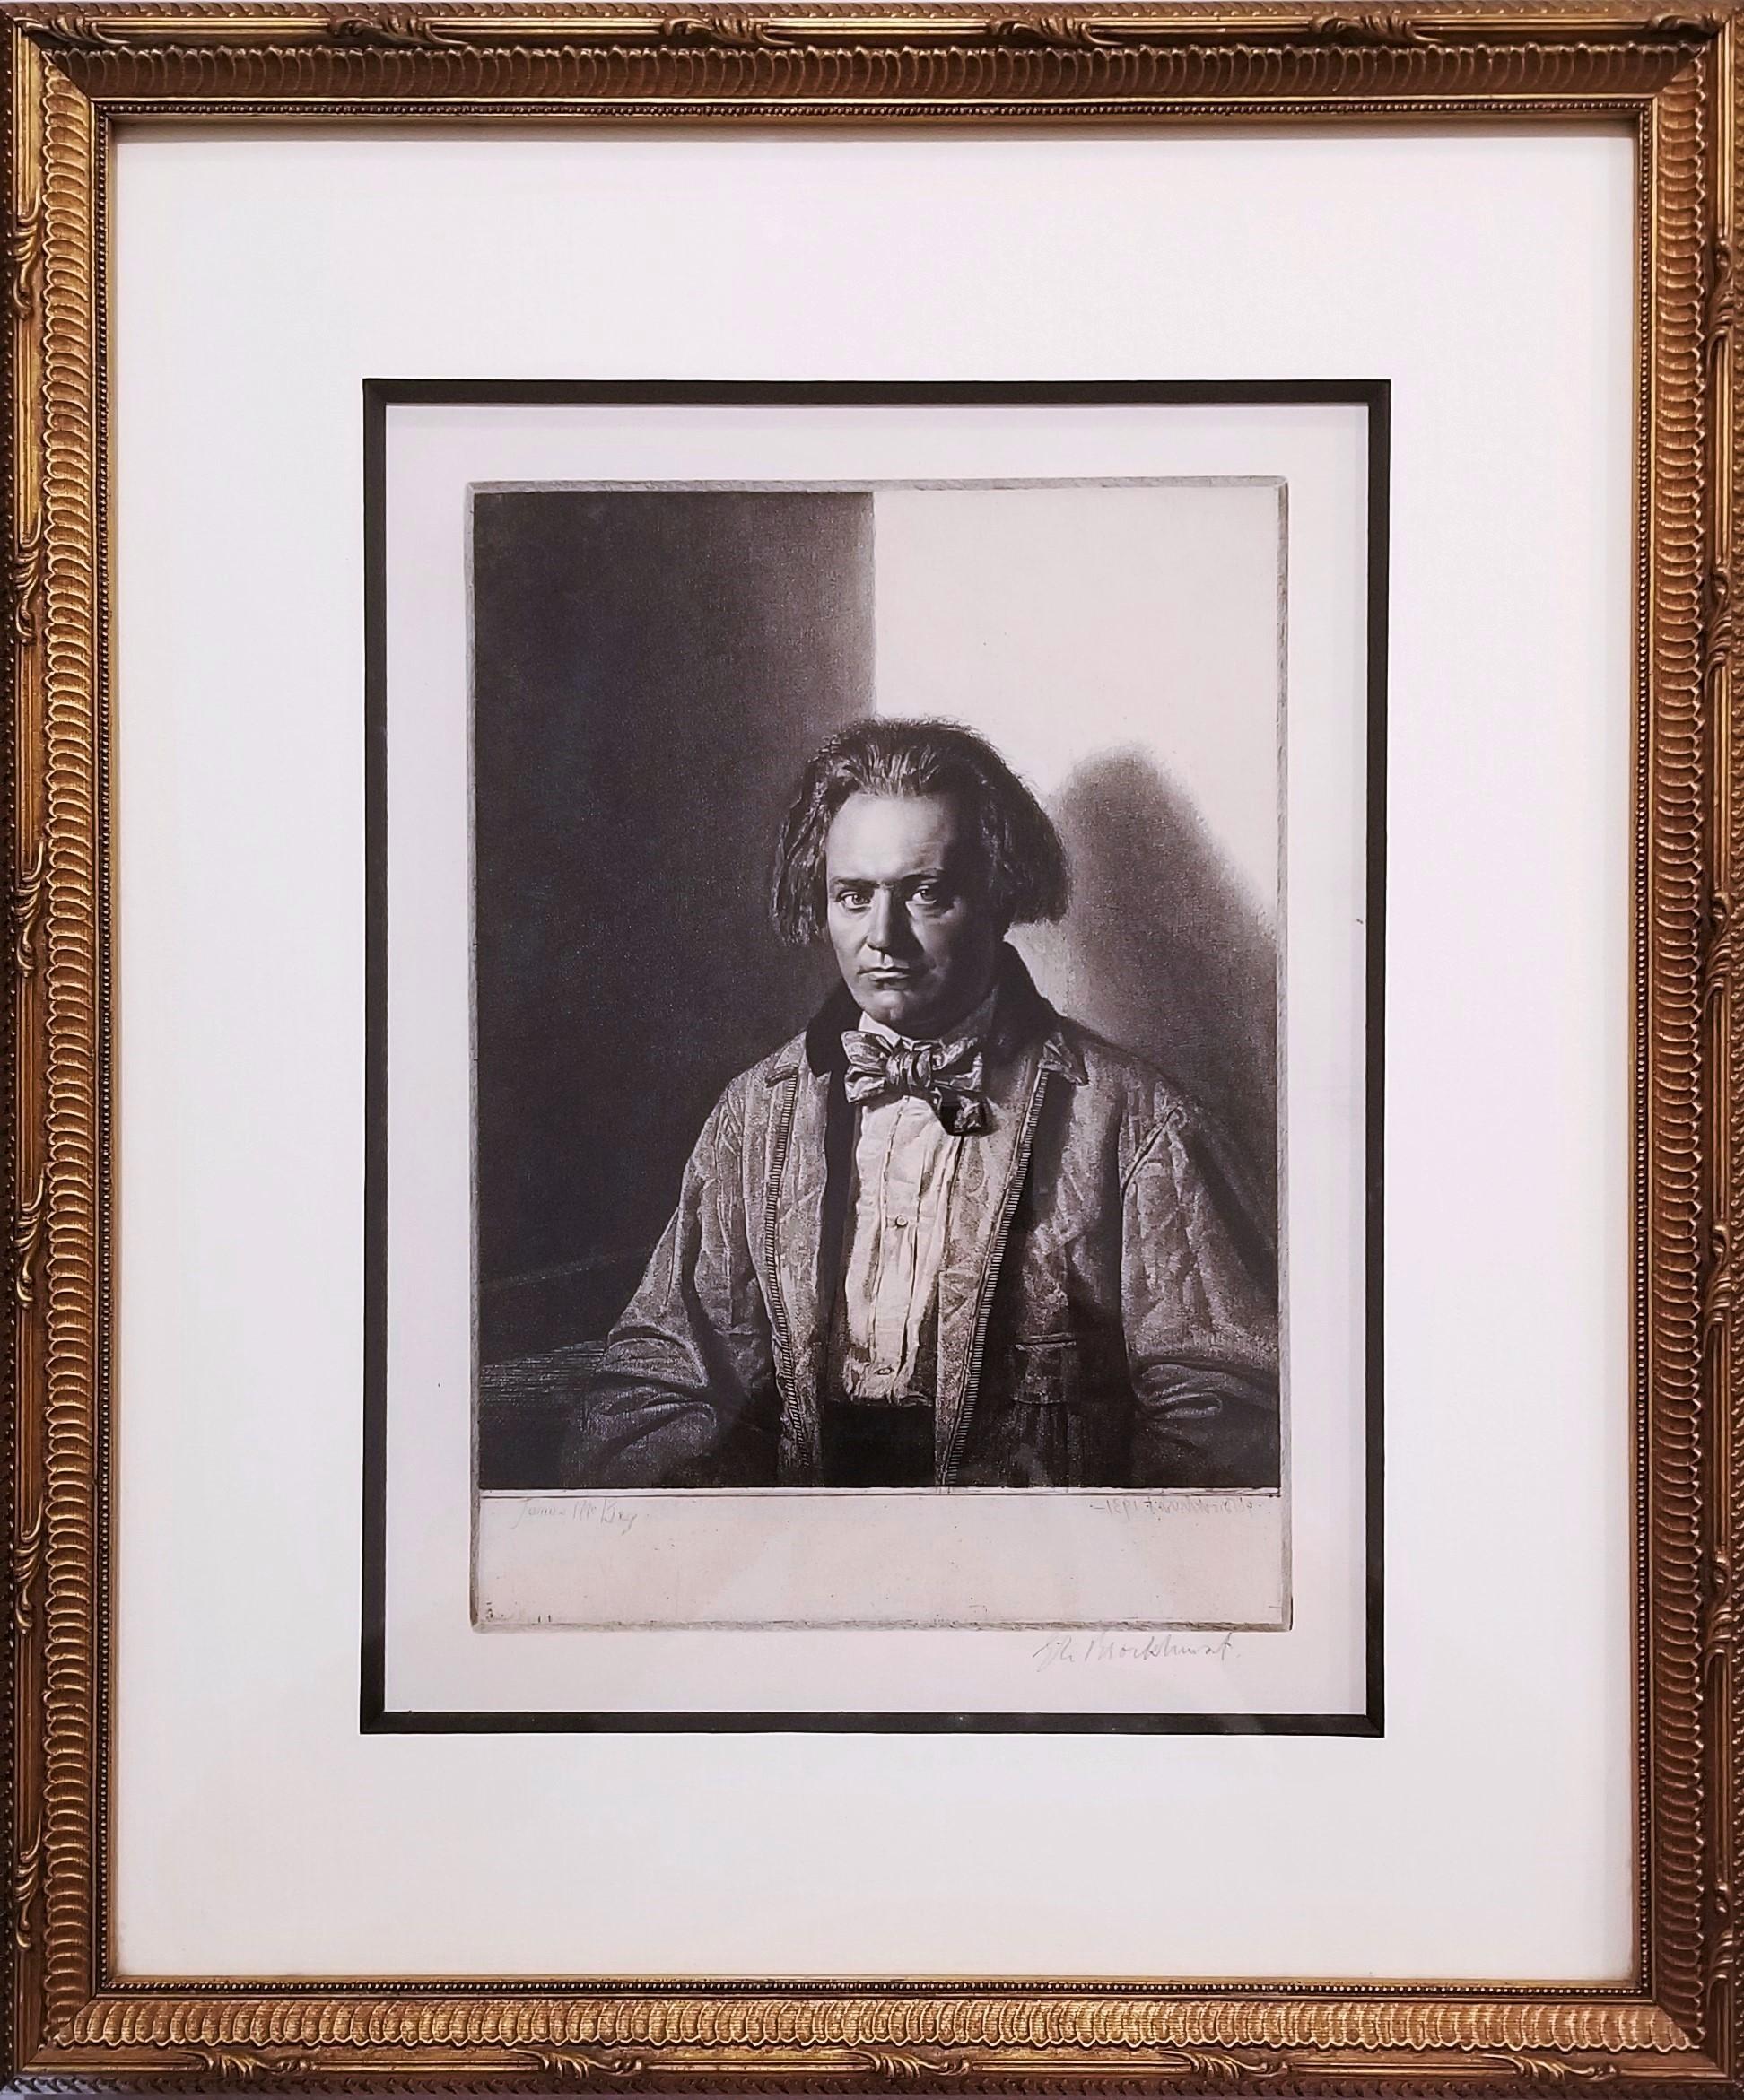 James McBey /// Gerald Leslie Brockhust, portrait moderne britannique, gravure de visage - Print de Gerald Leslie Brockhurst